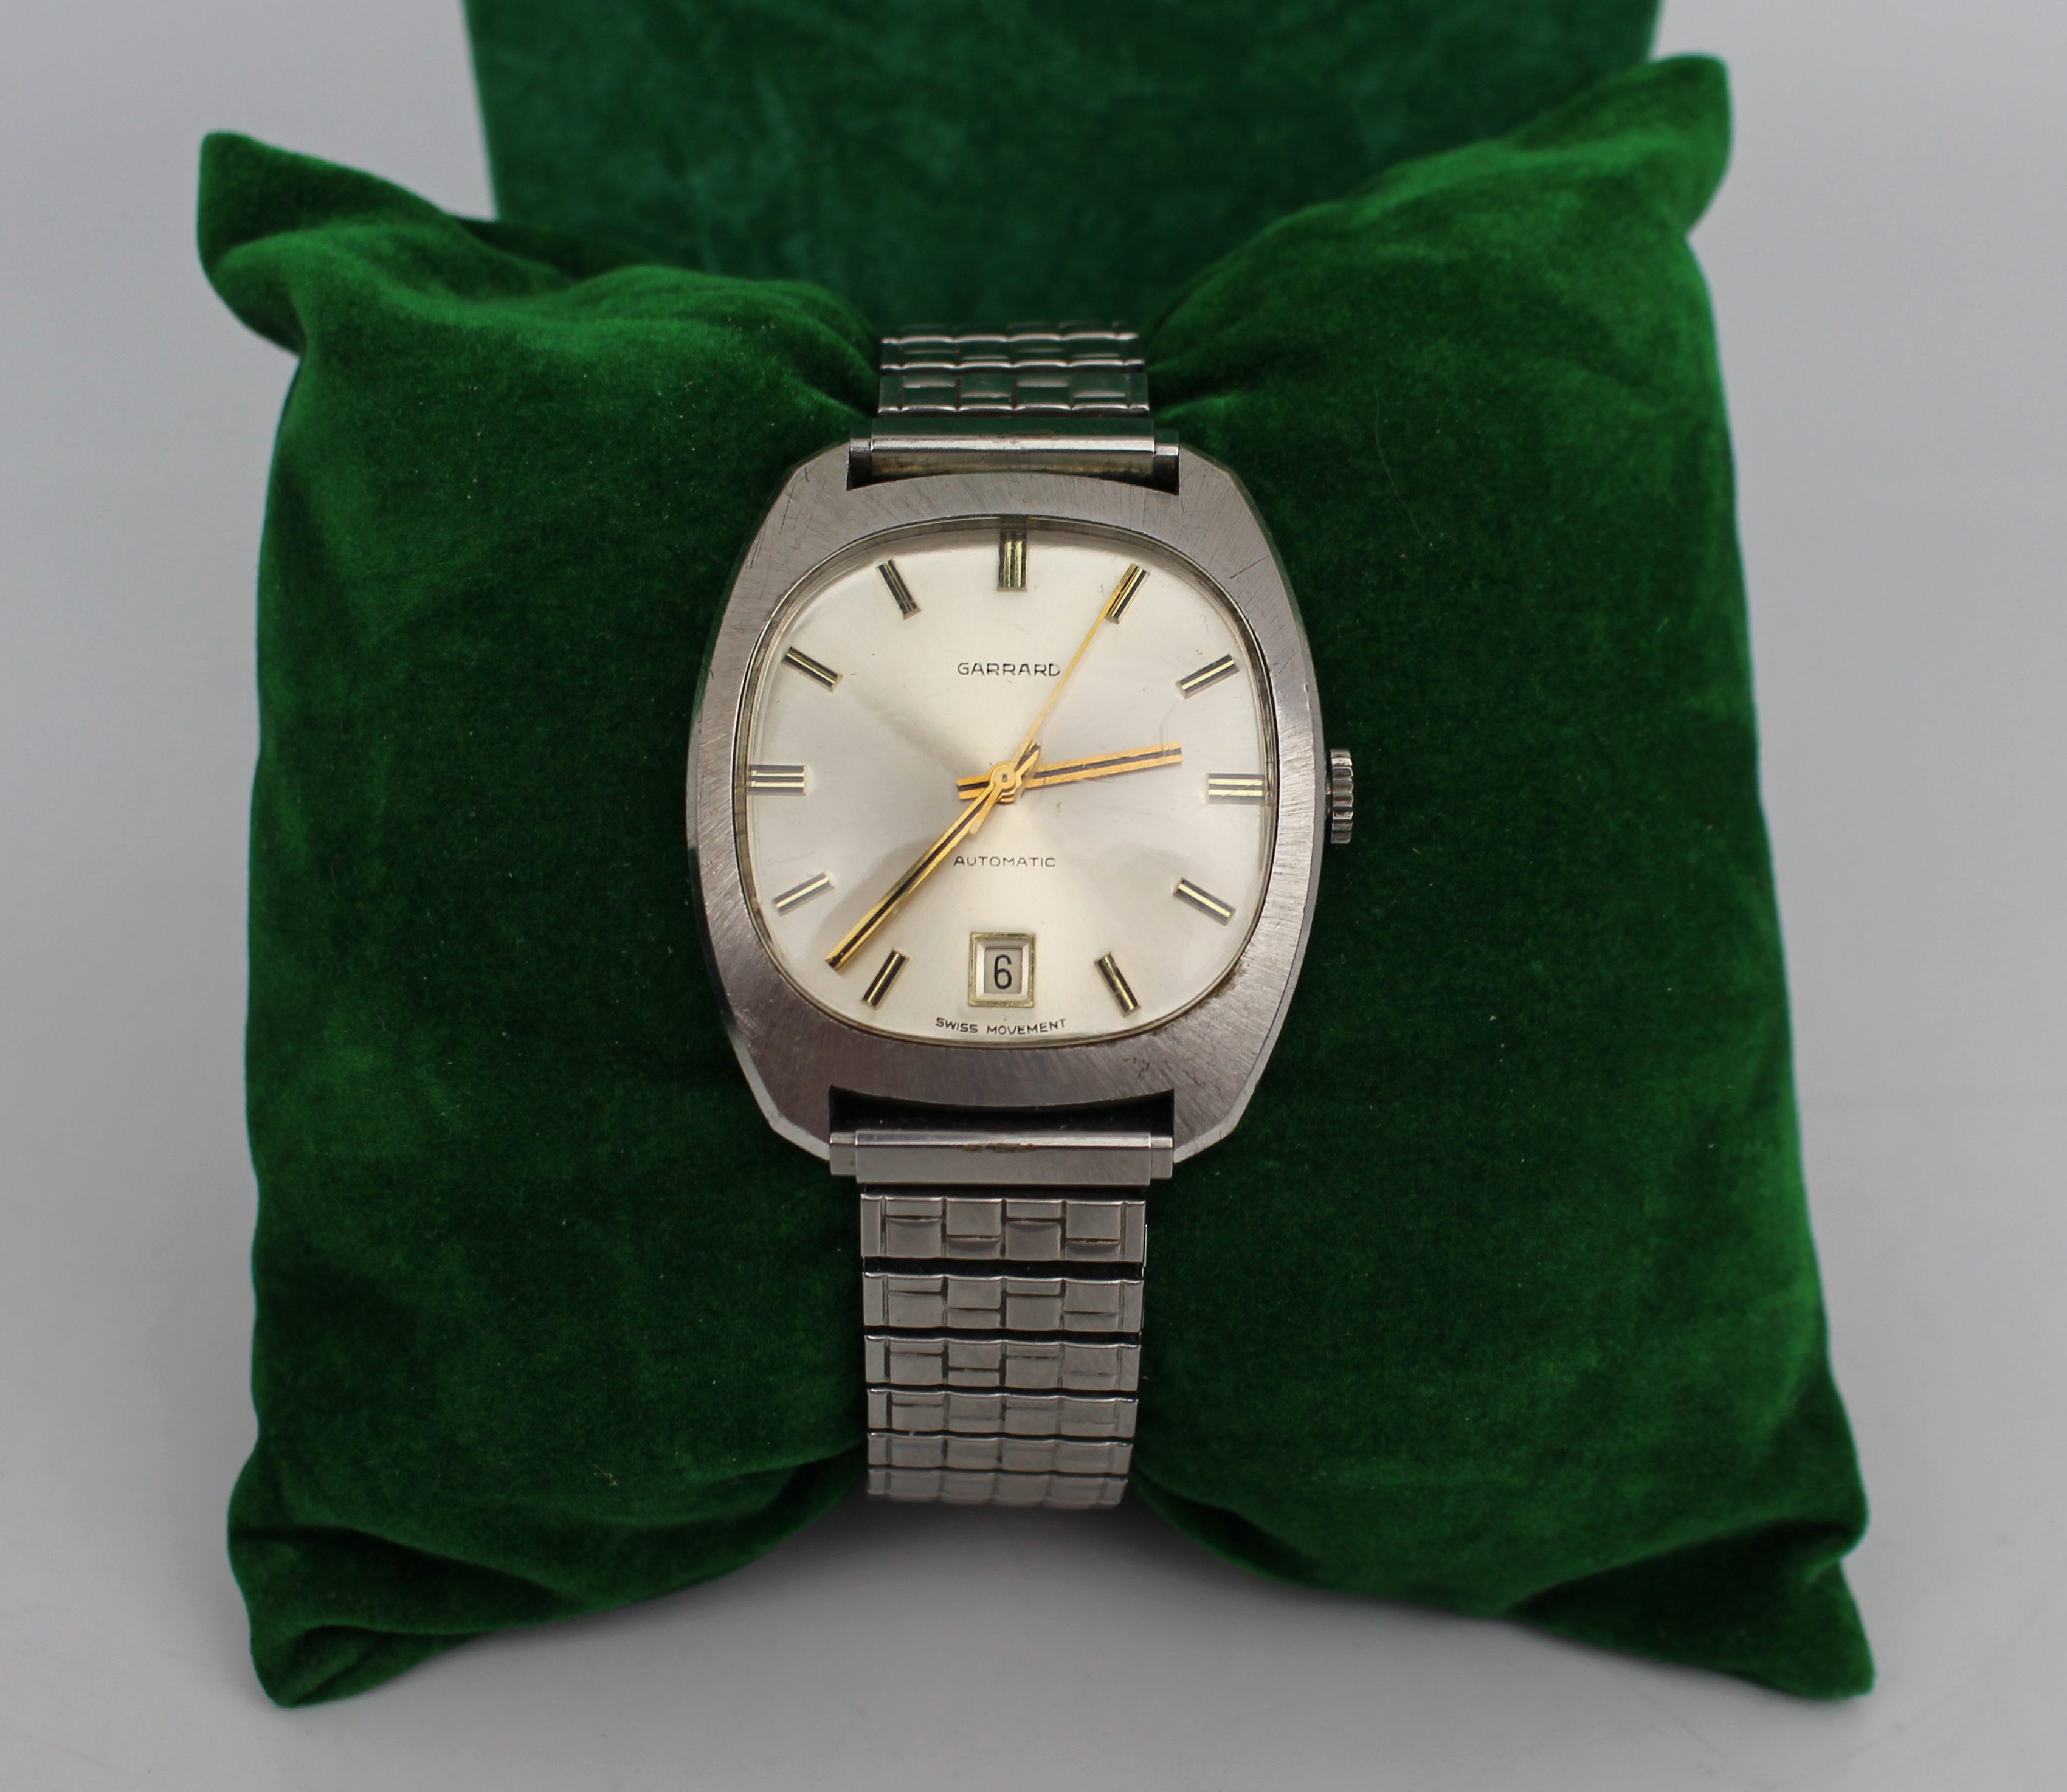 Vintage Presentation Wristwatch by Garrard - Image 4 of 4